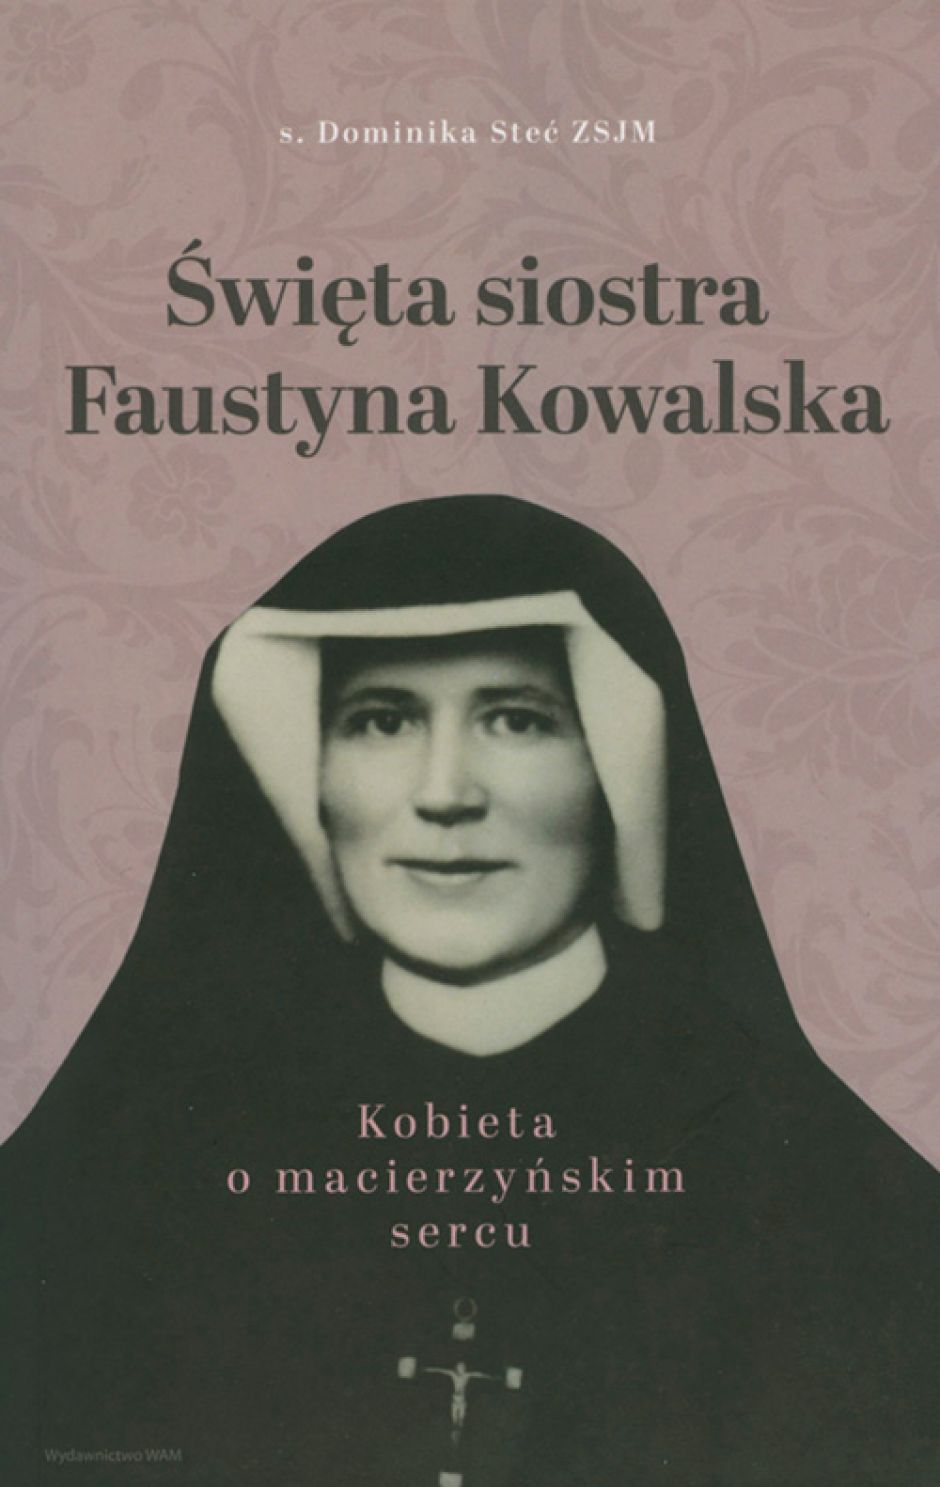 Spotkanie autorskie i prezentacja książki o św. Faustynie Kowalskiej